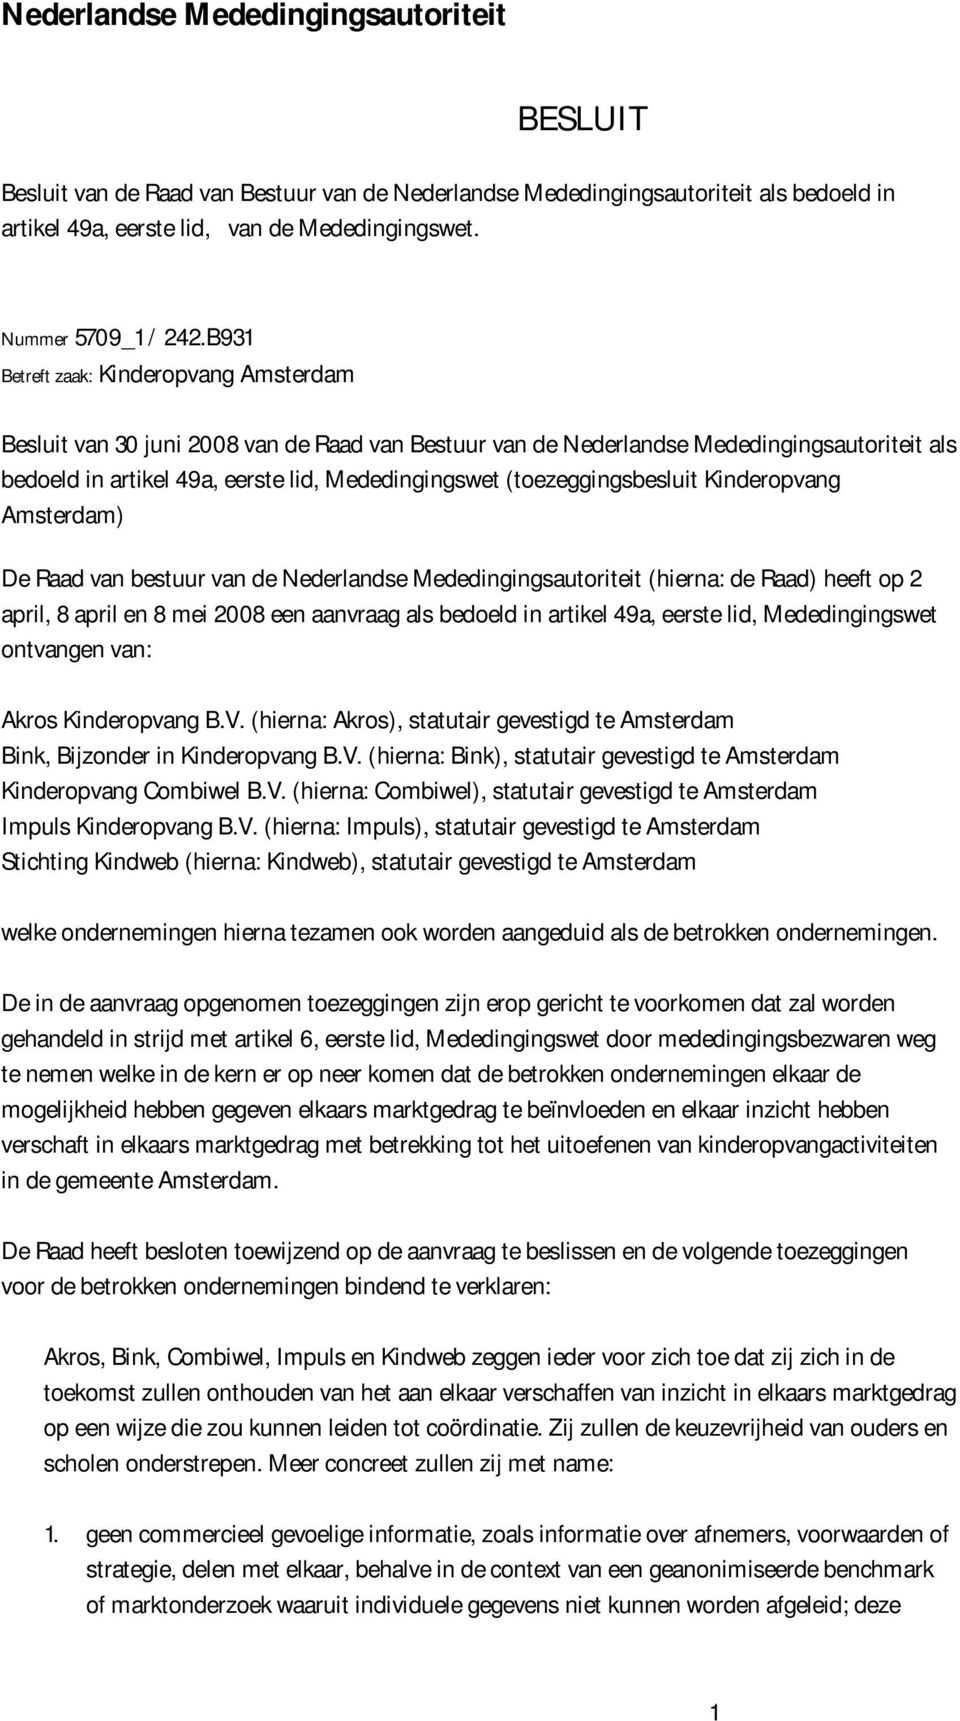 B931 Betreft zaak: Kinderopvang Amsterdam Besluit van 30 juni 2008 van de Raad van Bestuur van de Nederlandse Mededingingsautoriteit als bedoeld in artikel 49a, eerste lid, Mededingingswet